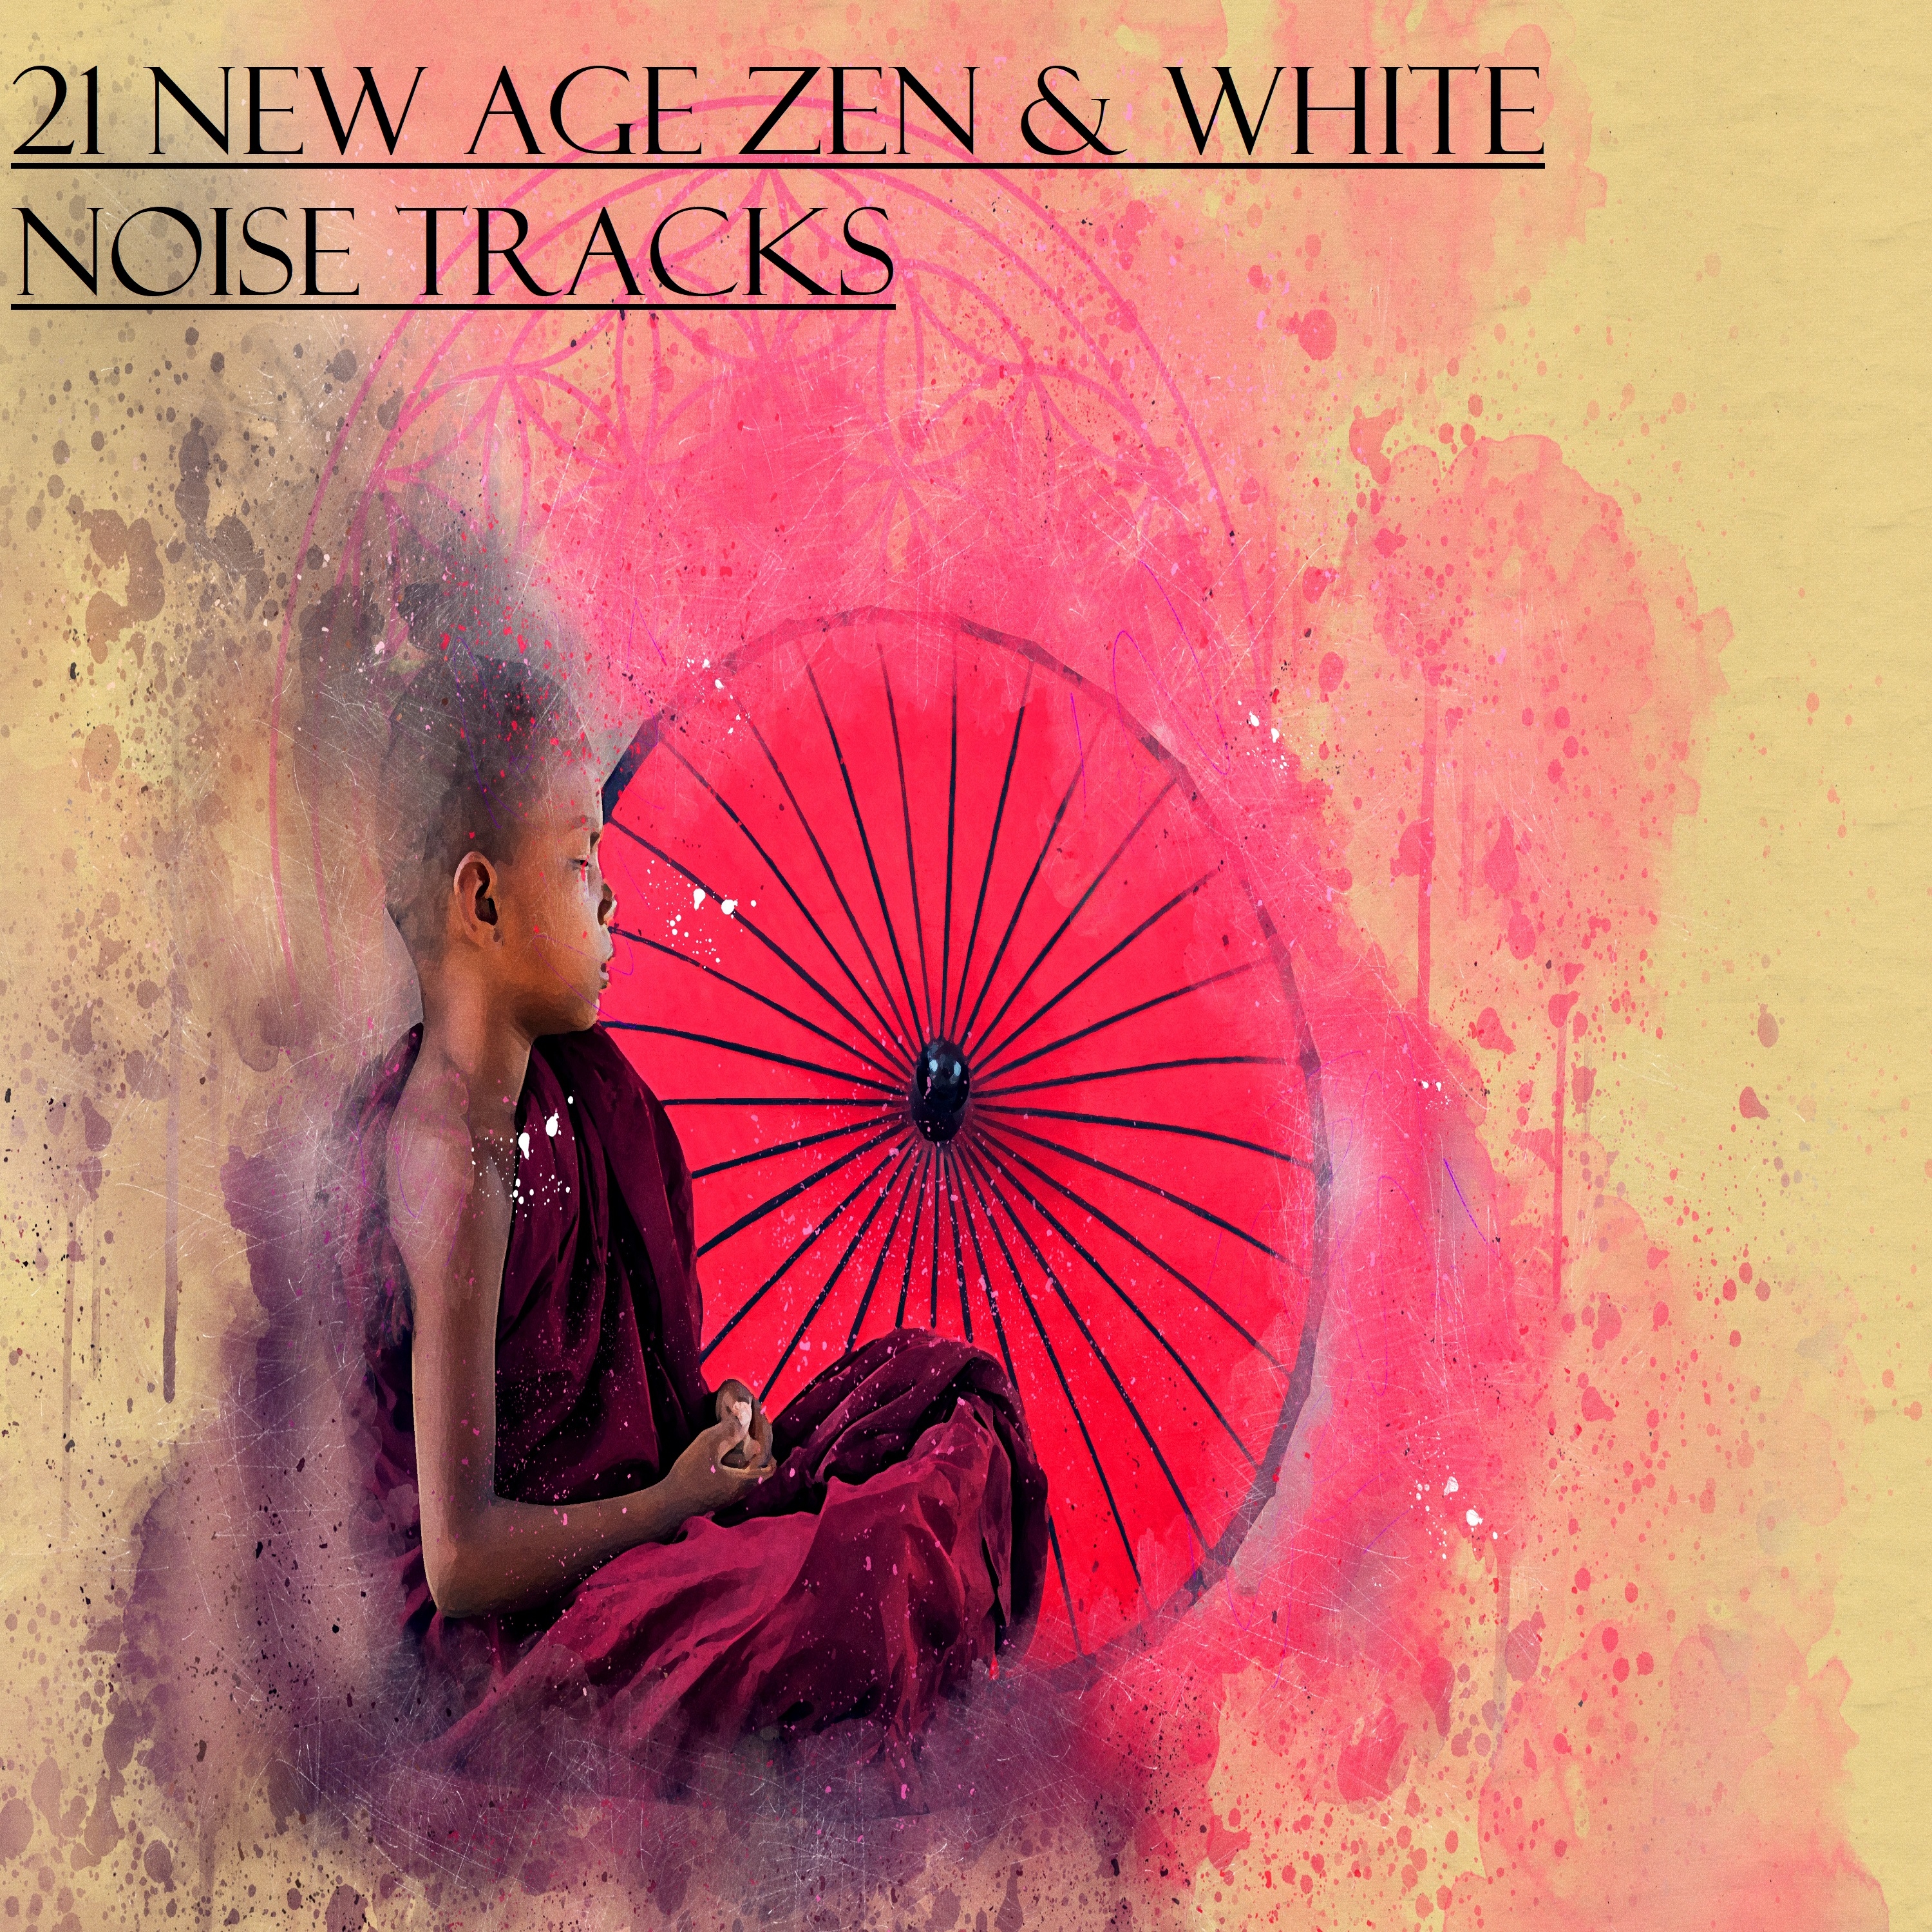 21 New Age Zen & White Noise Tracks